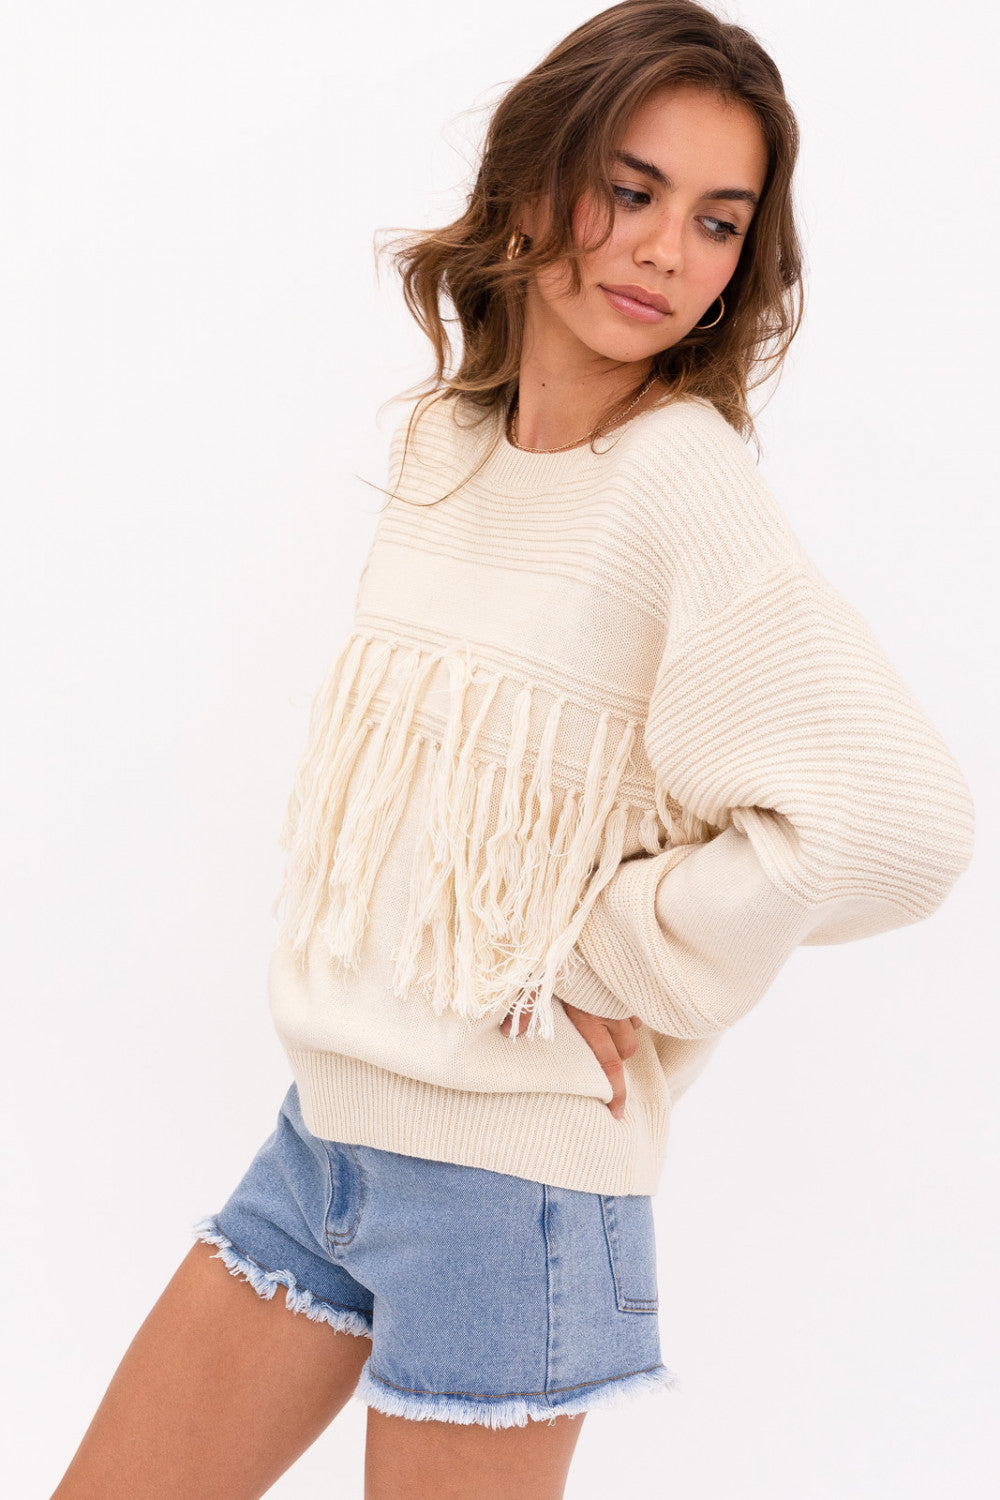 Cream Fringe Sweater